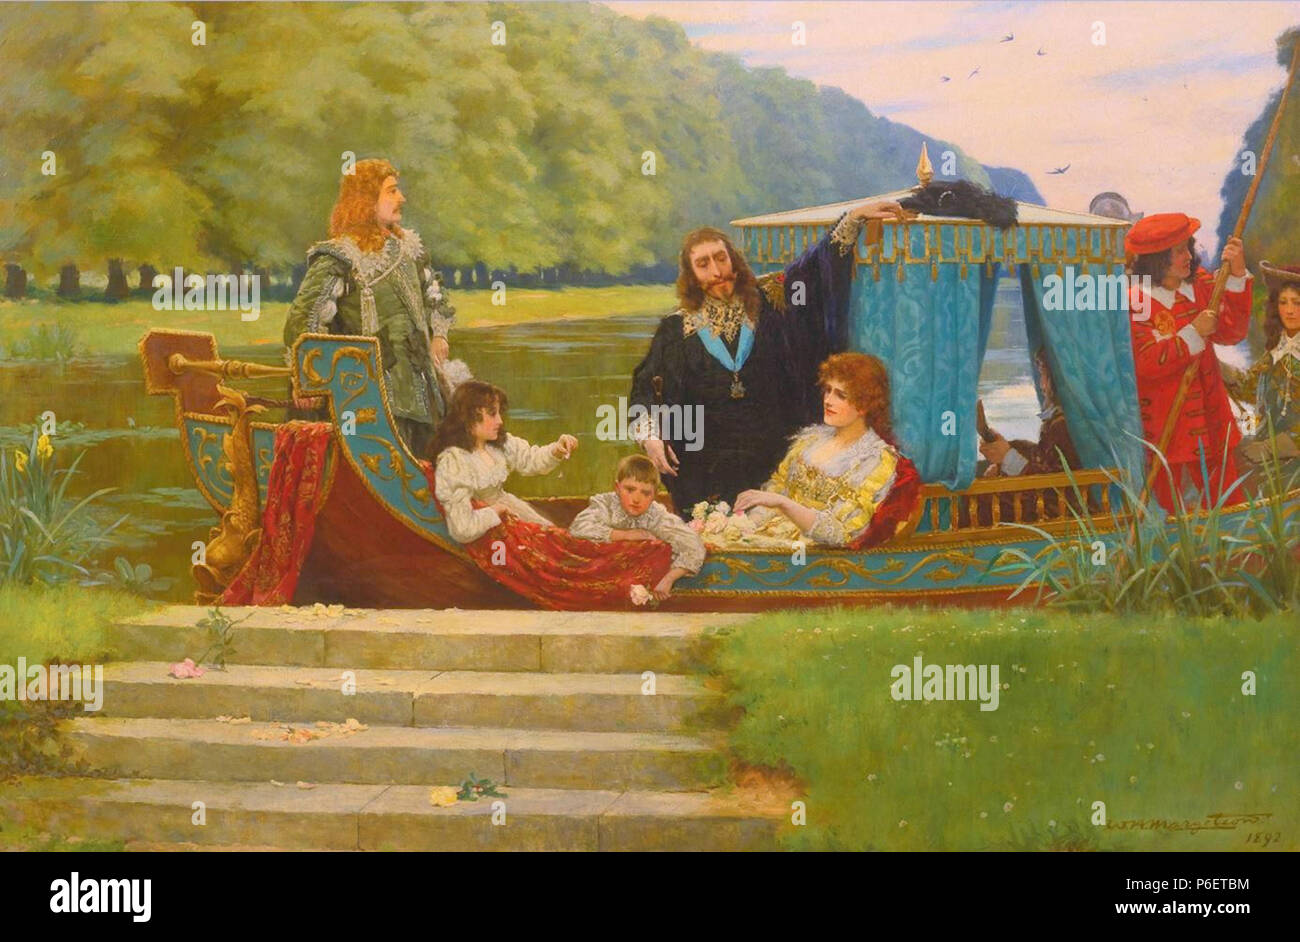 (William Henry Margetson; 1861,- 2 1940,,) -. ========================================================= William Henry Margetson (London, Dezember 1861 - Wallingford, Oxfordshire, 2. Januar 1940) war ein englischer Maler und Illustrator, vor allem für seine ästhetischen Porträts von Frauen bekannt. www.youtube.com/watchv=E5dMXiSpfEE. 13 September 2016, 13:10 81 William Henry Margetson 095 (25529017958) Stockfoto